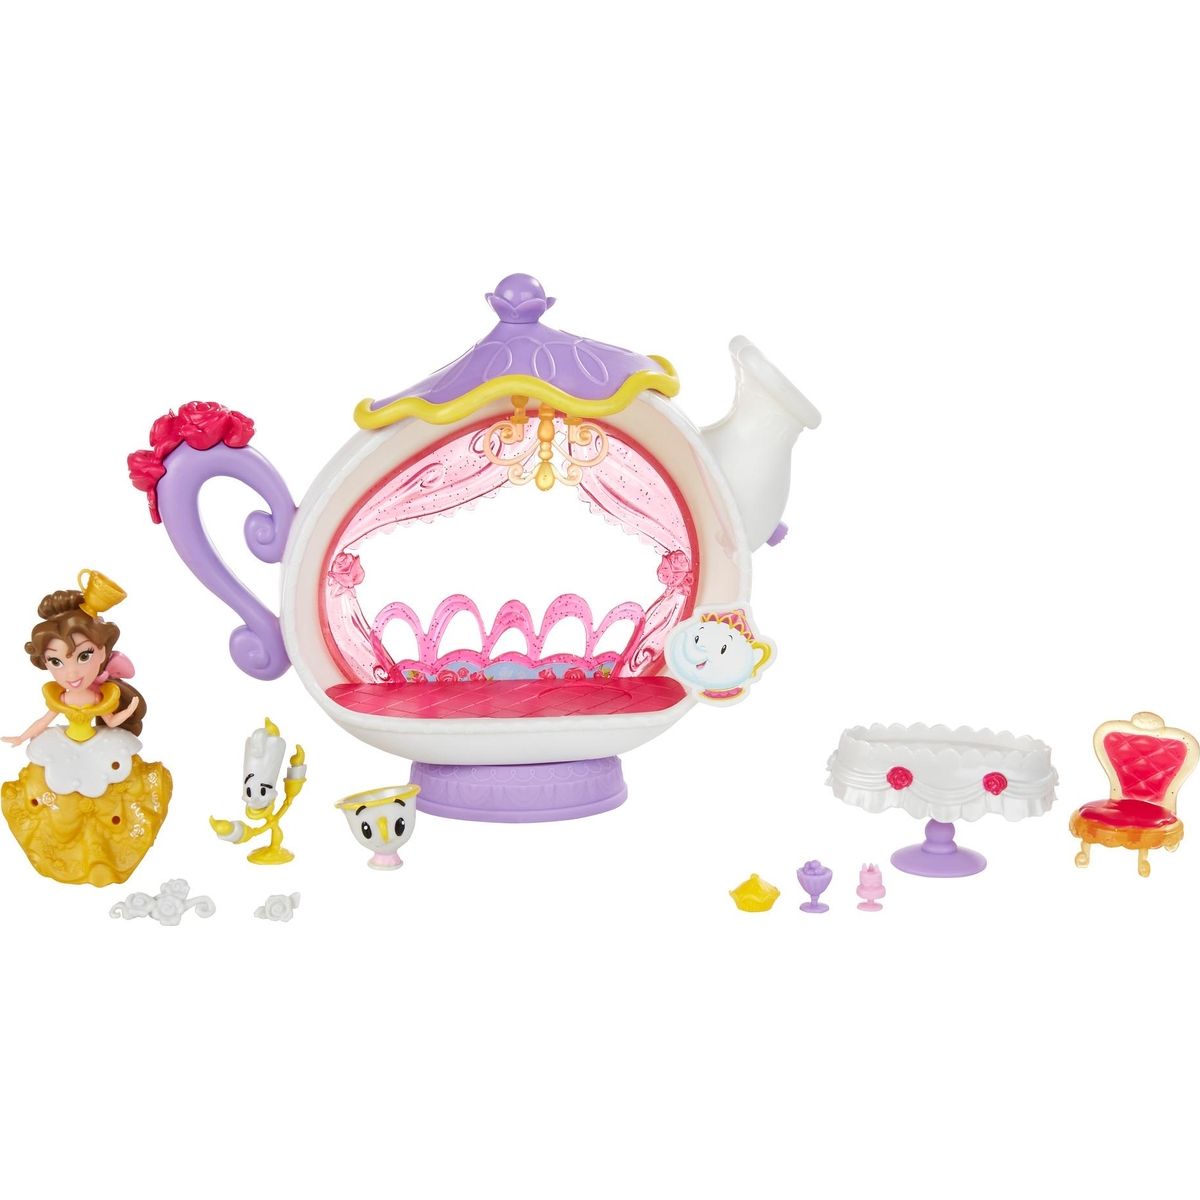 Hasbro Disney Princess Mini hrací set s princeznou Kráska